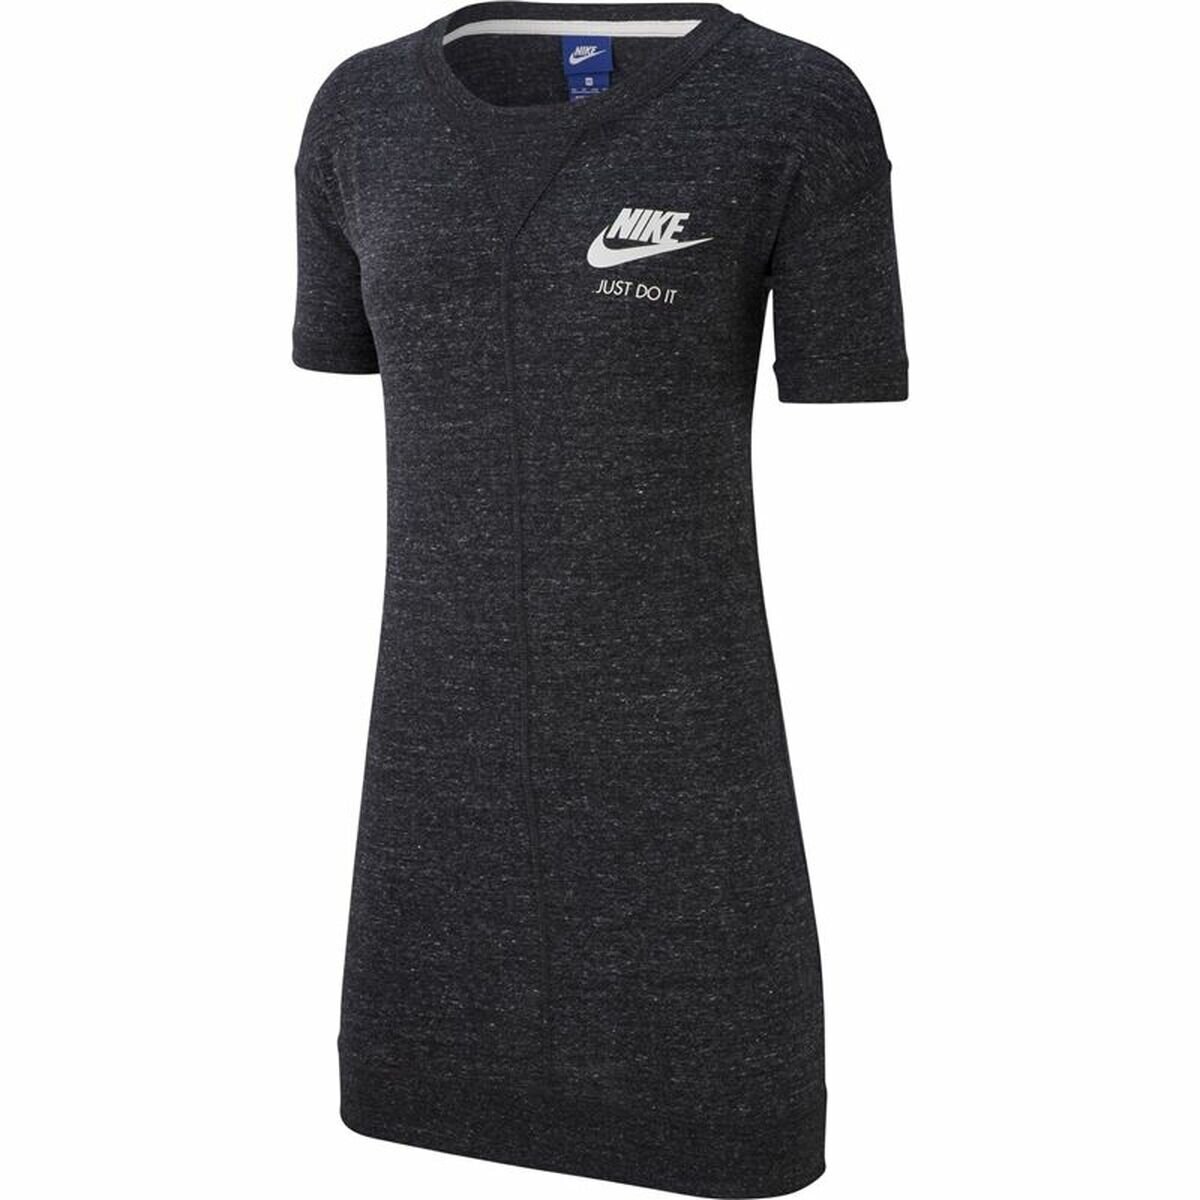 Ladies Nike Sports Dress in Black